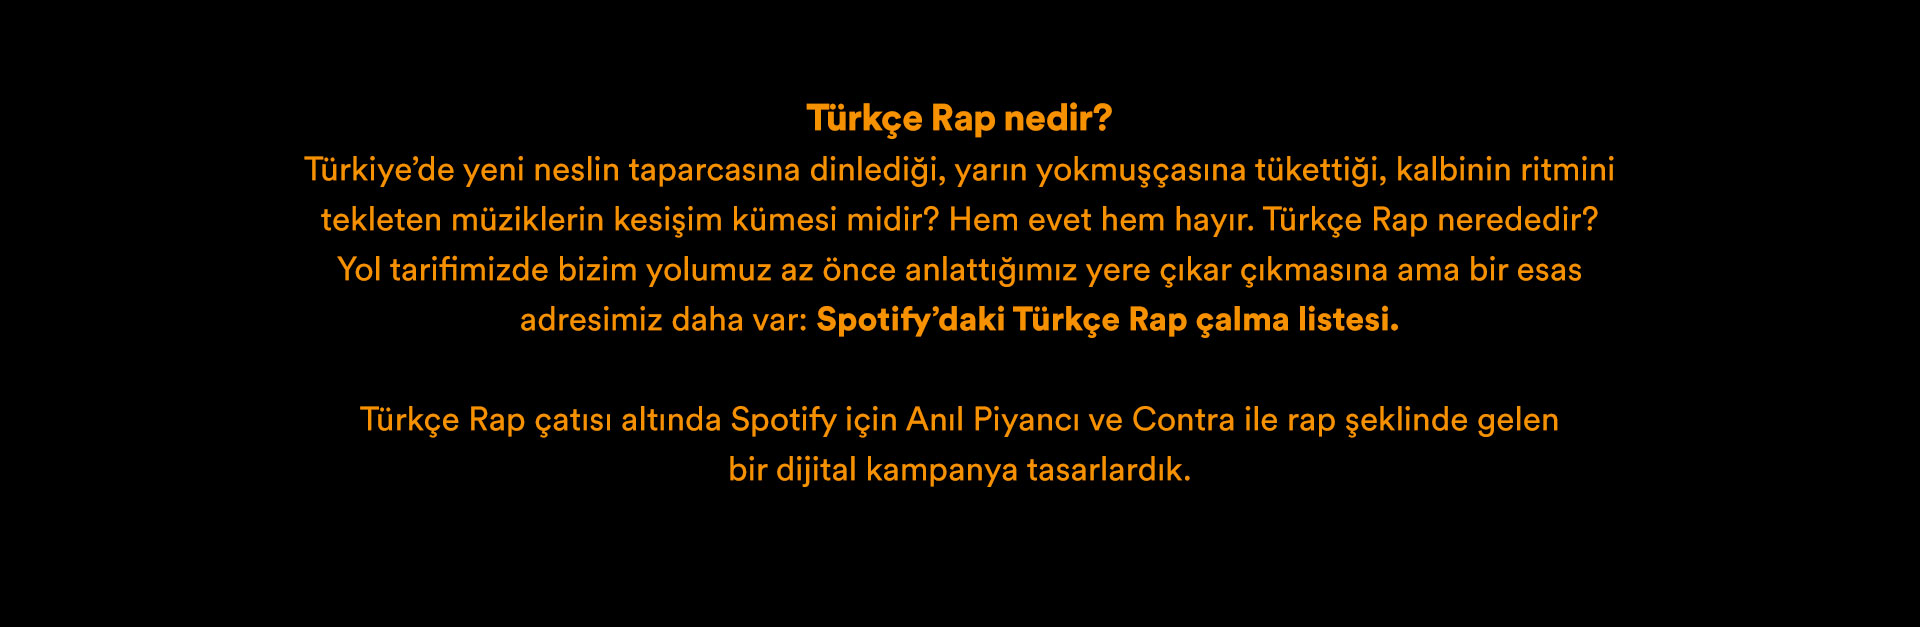 Spotify_Turkce_Rap_02